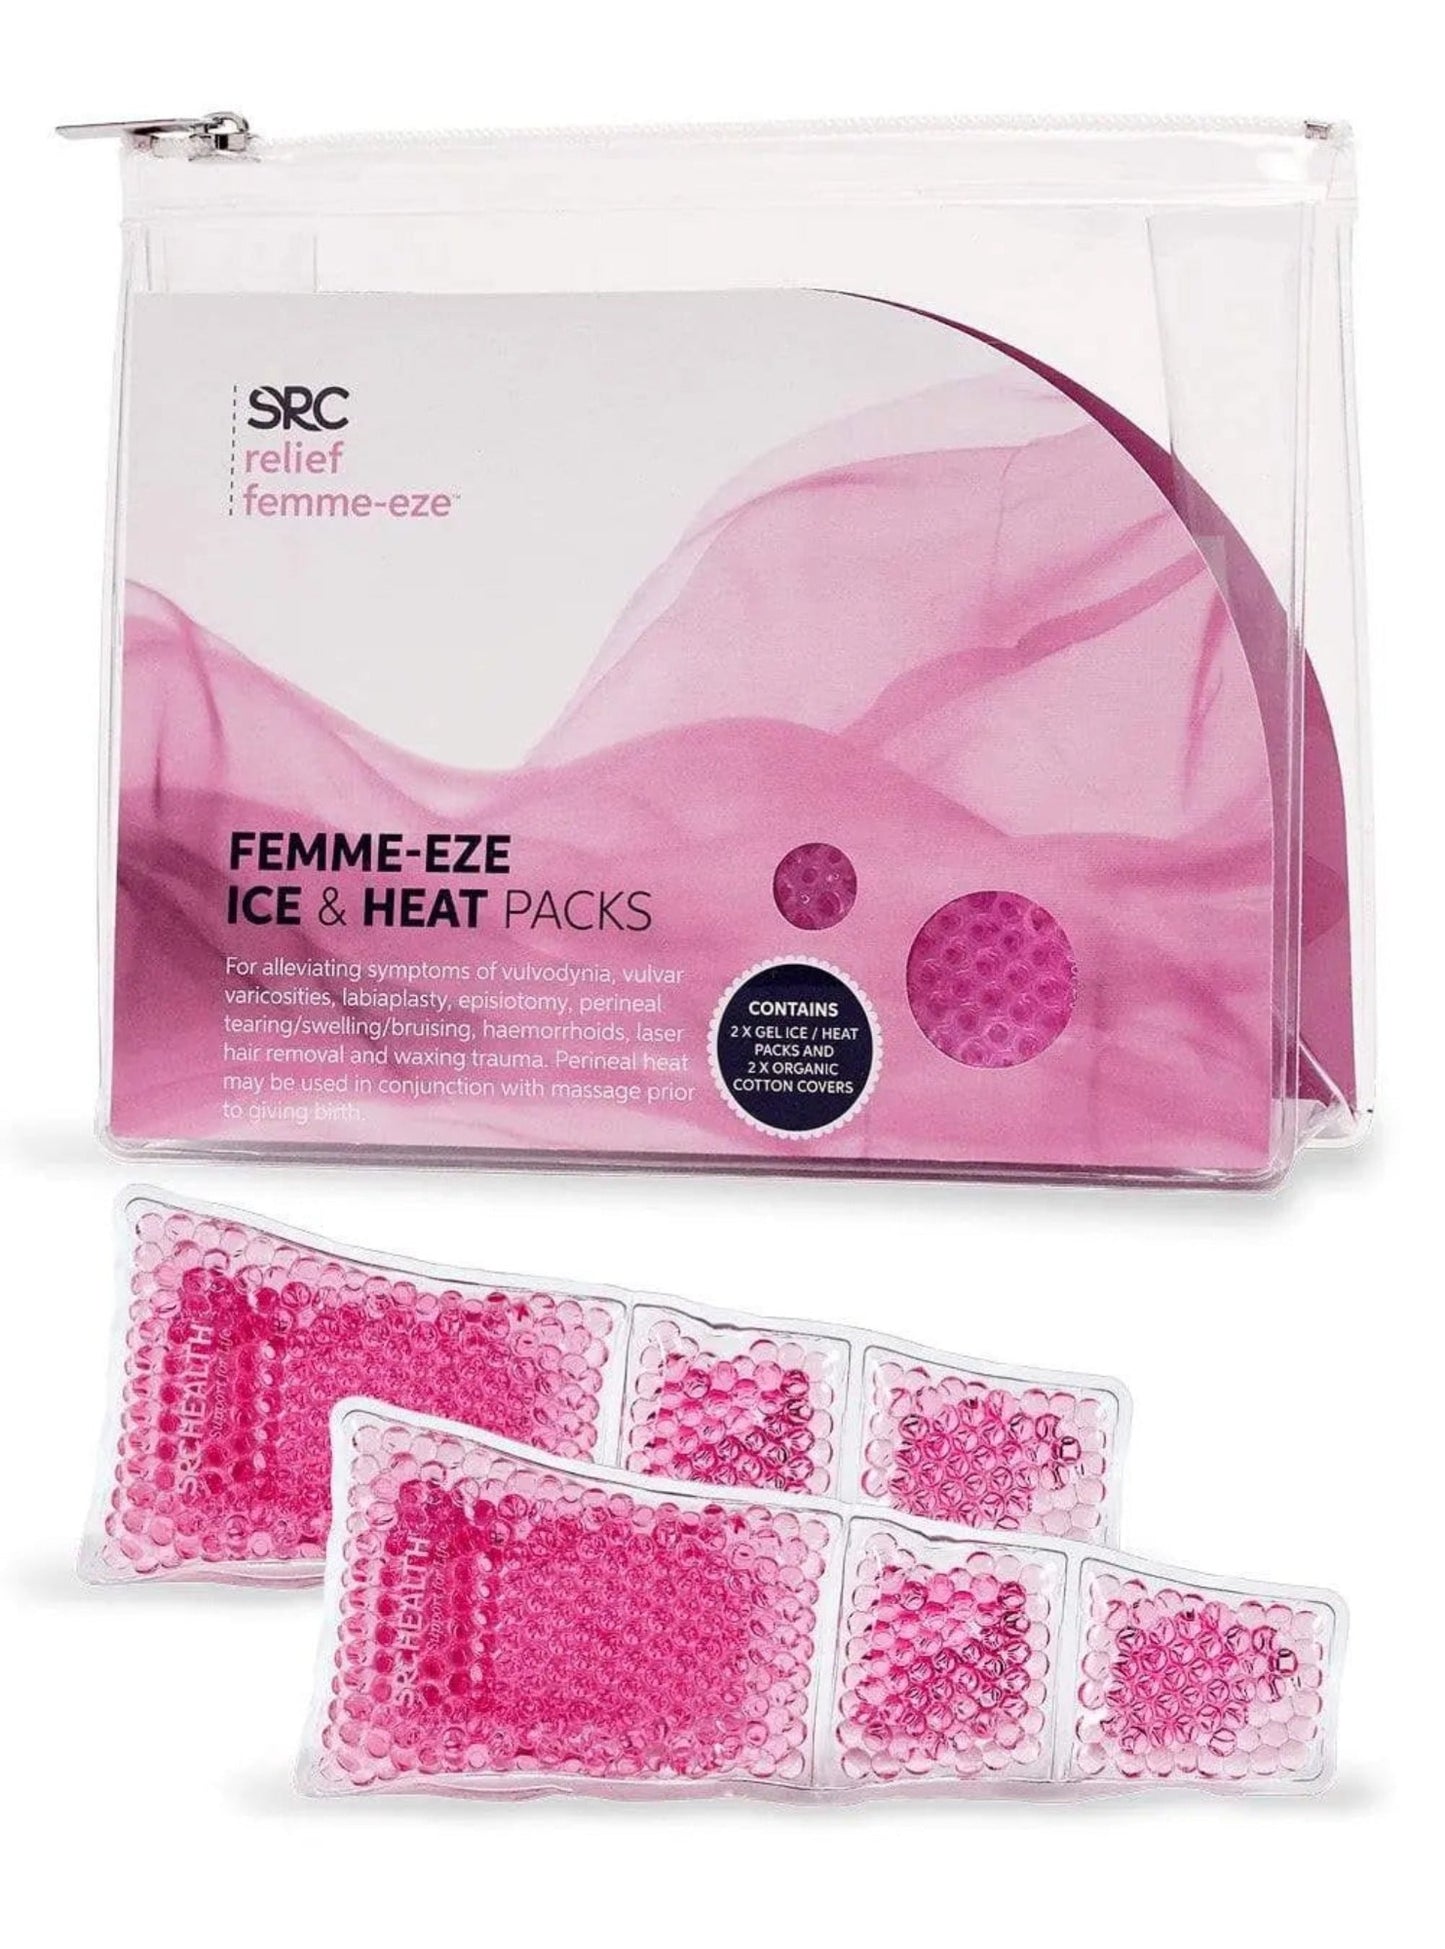 Pain management SRC Relief Femme Eze Perineum Ice & Heat packs SRC Health 29.95